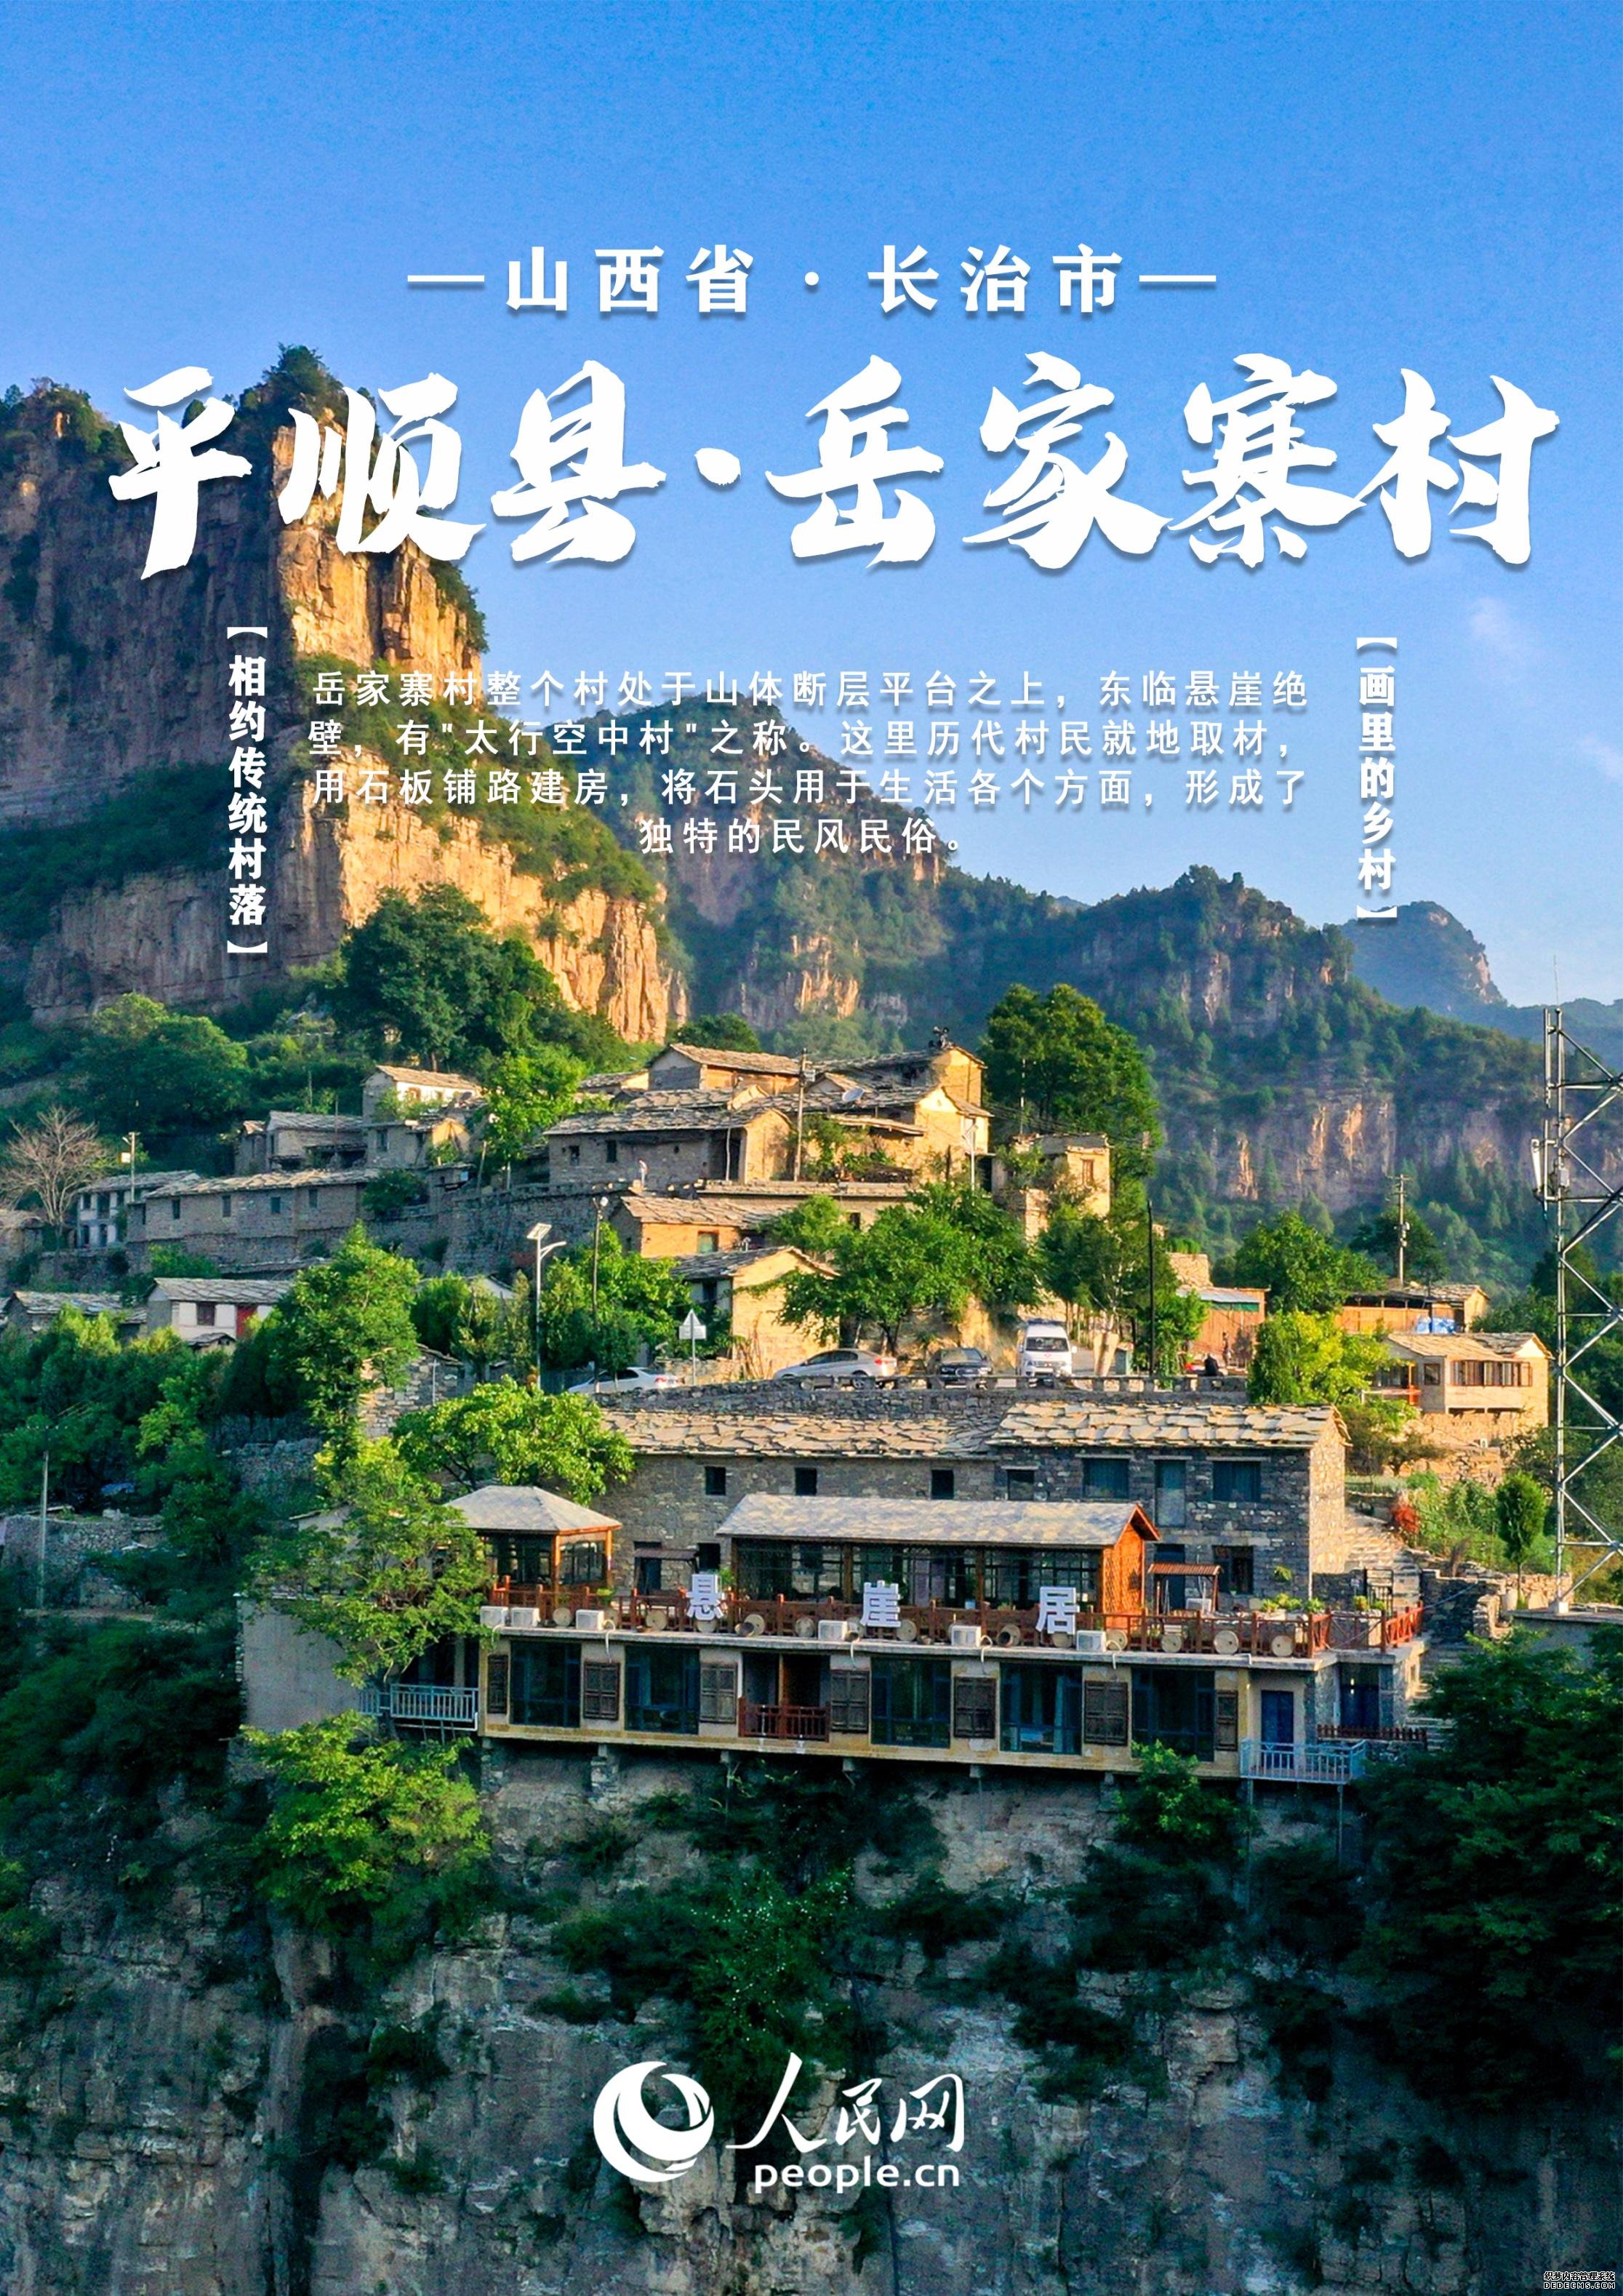 中国山西传统村落大赏 | 砖石筑墙 青瓦覆顶 解锁黄河边的古城文化